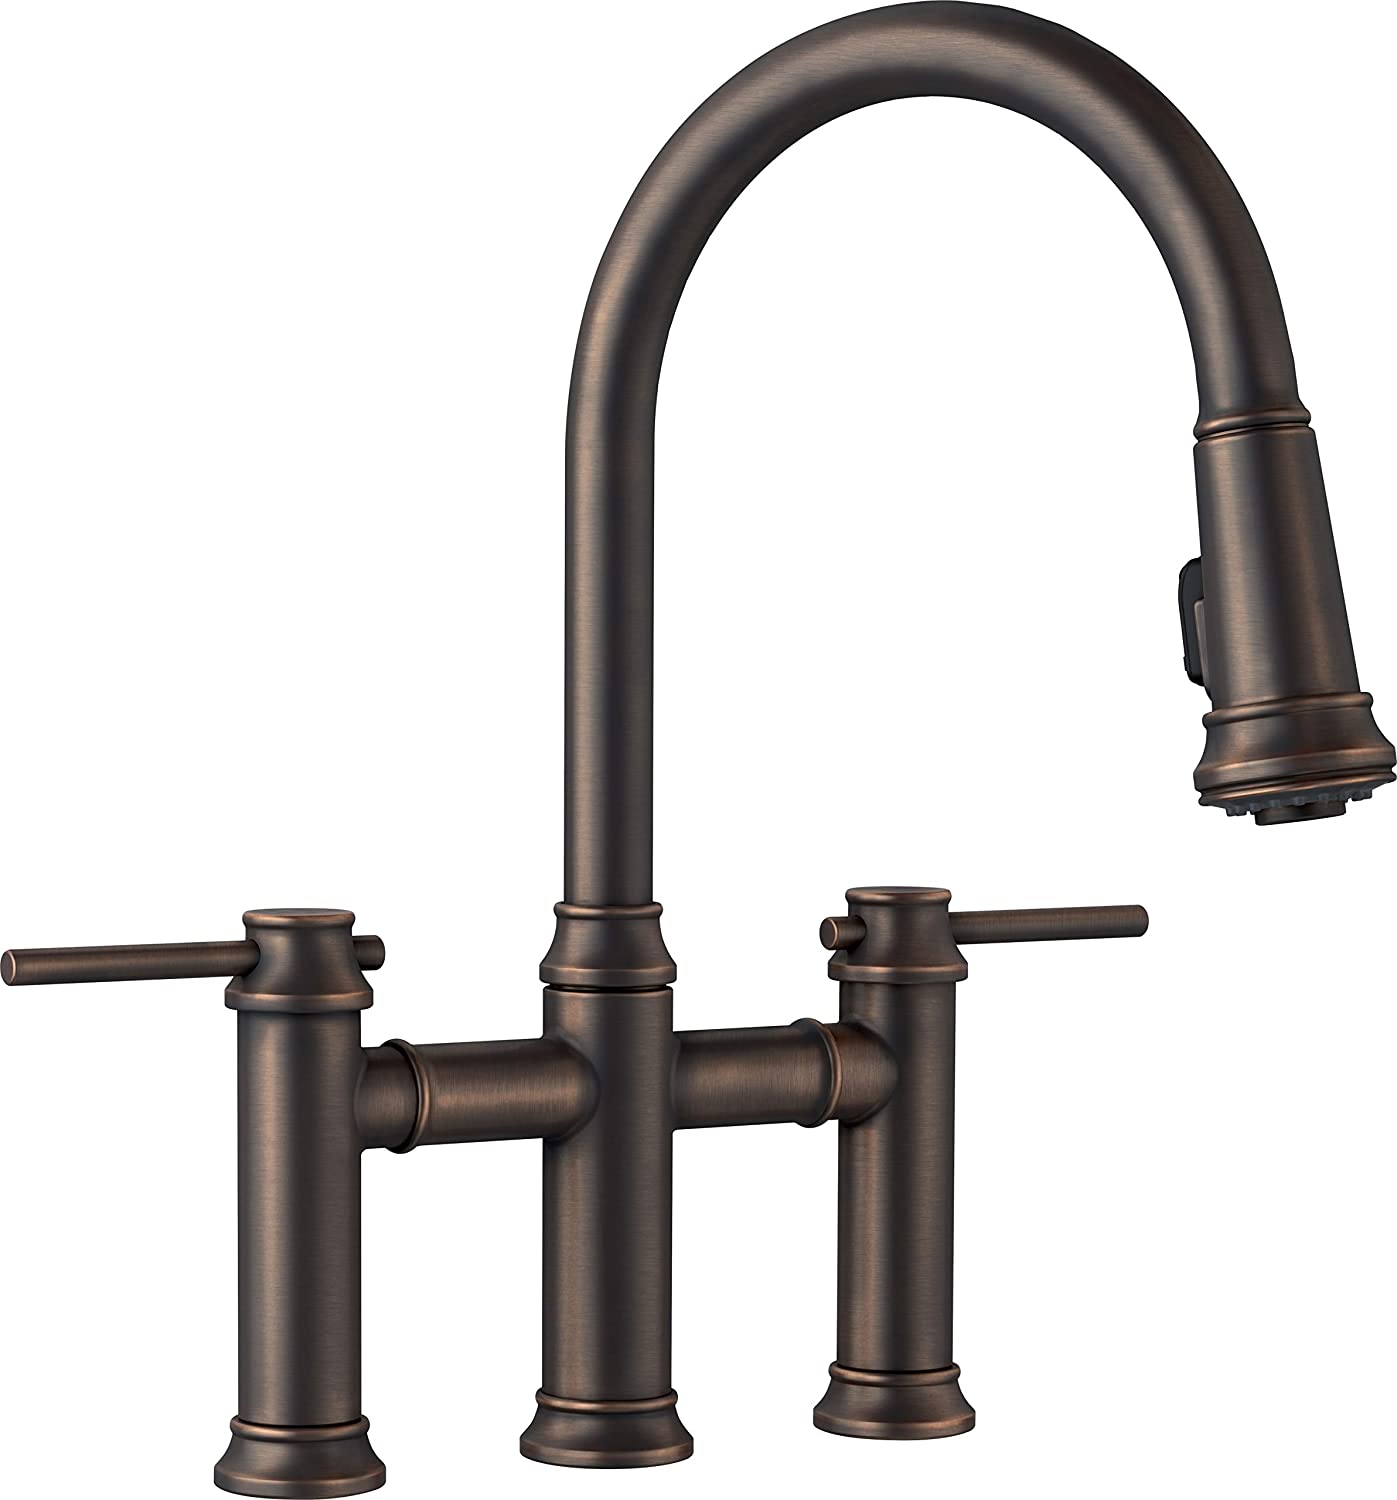 Empressa Pull-Down Dual Spray Bridge Kitchen Faucet 1.5 gpm - Oil-Rubbed Bronze